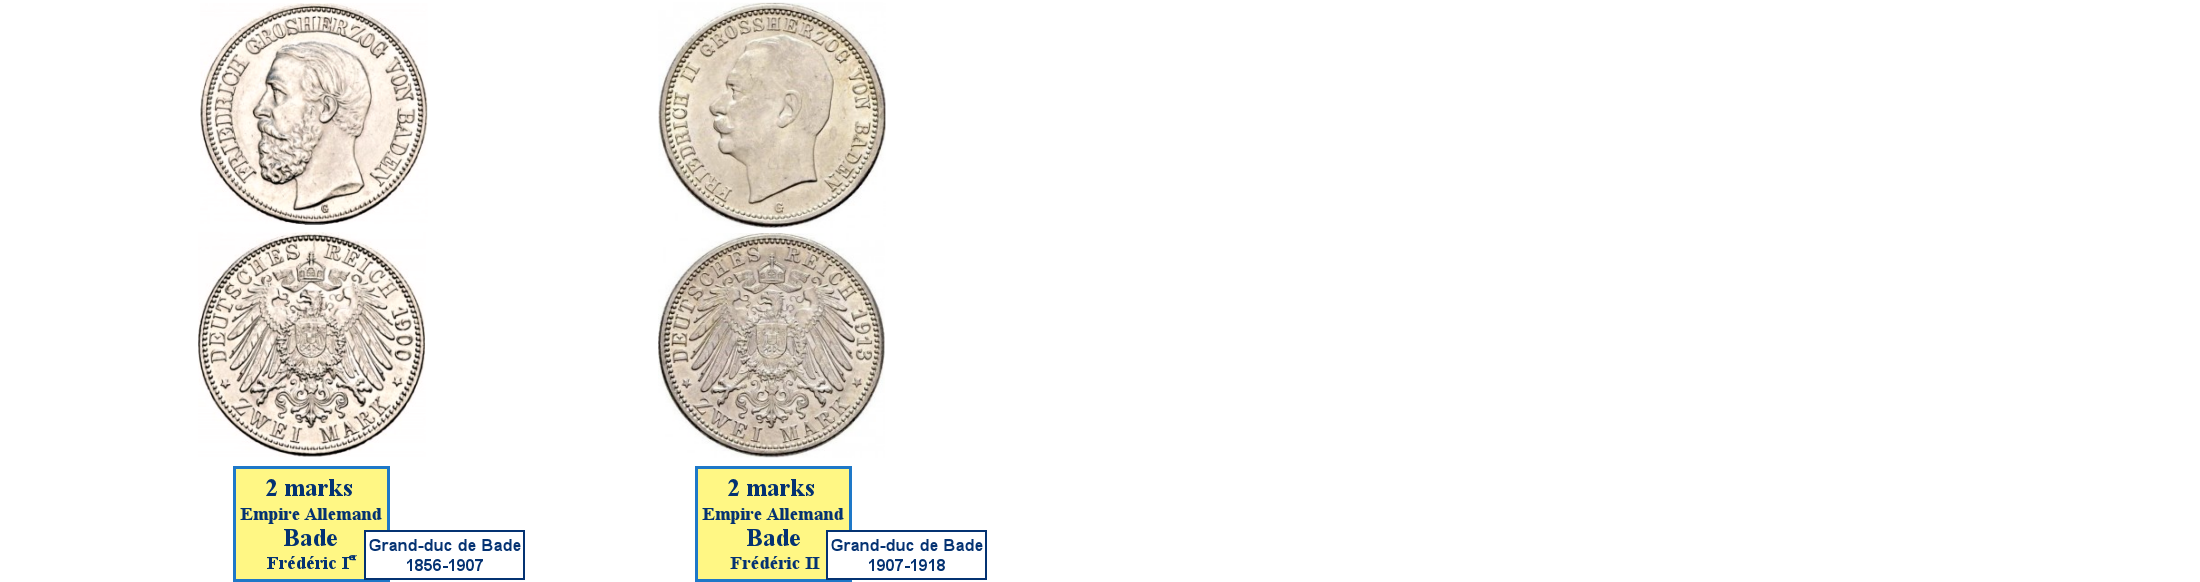 Photos de pièces de monnaies du Grand-Duché de Bade dans l'Empire Allemand